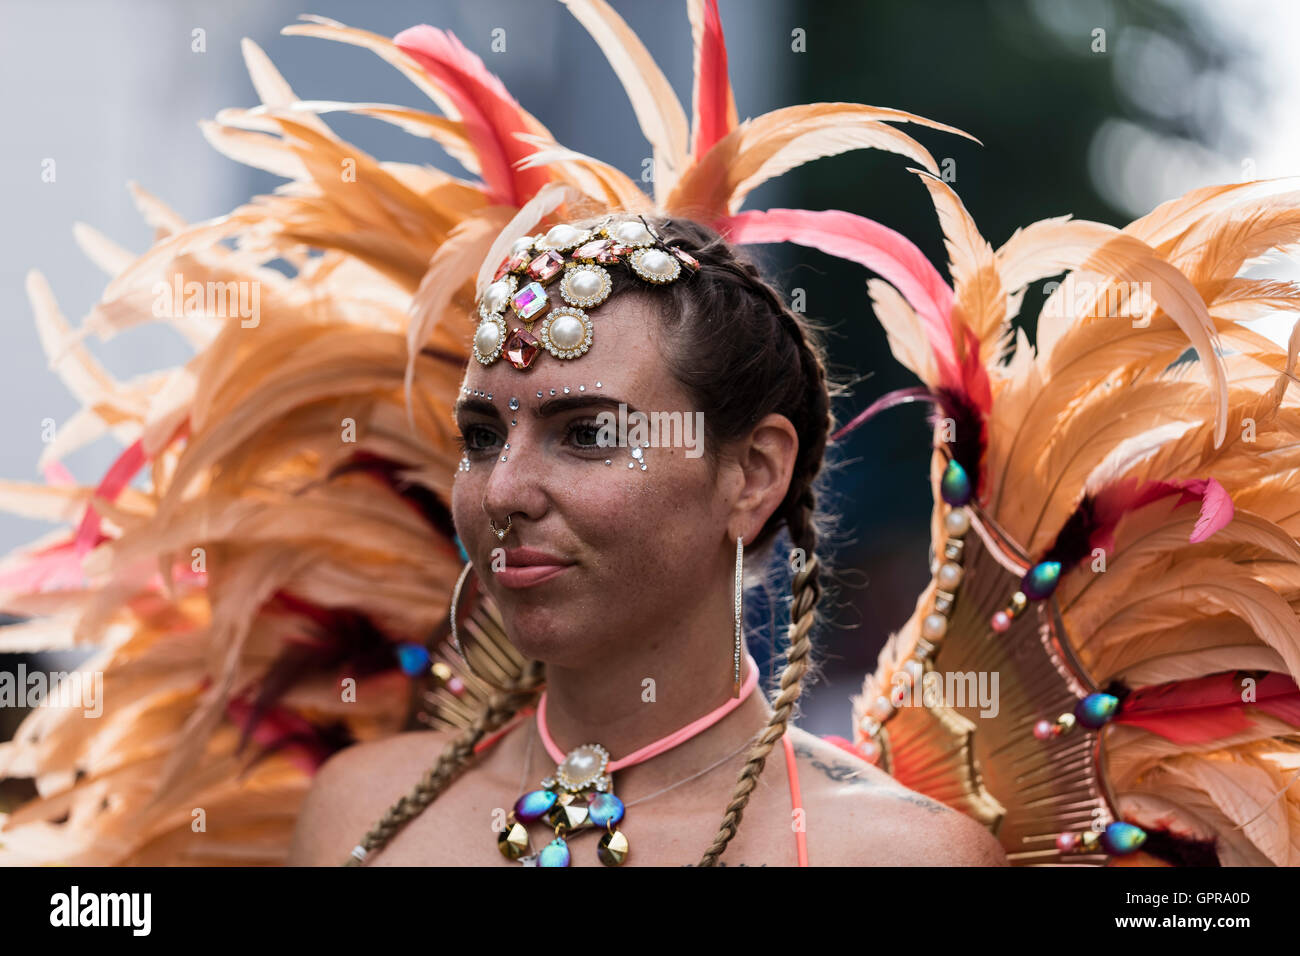 Jeune femme habillé en costume avec peach et coiffe de plumes rouges au carnaval de Notting Hill dans l'ouest de Londres Banque D'Images